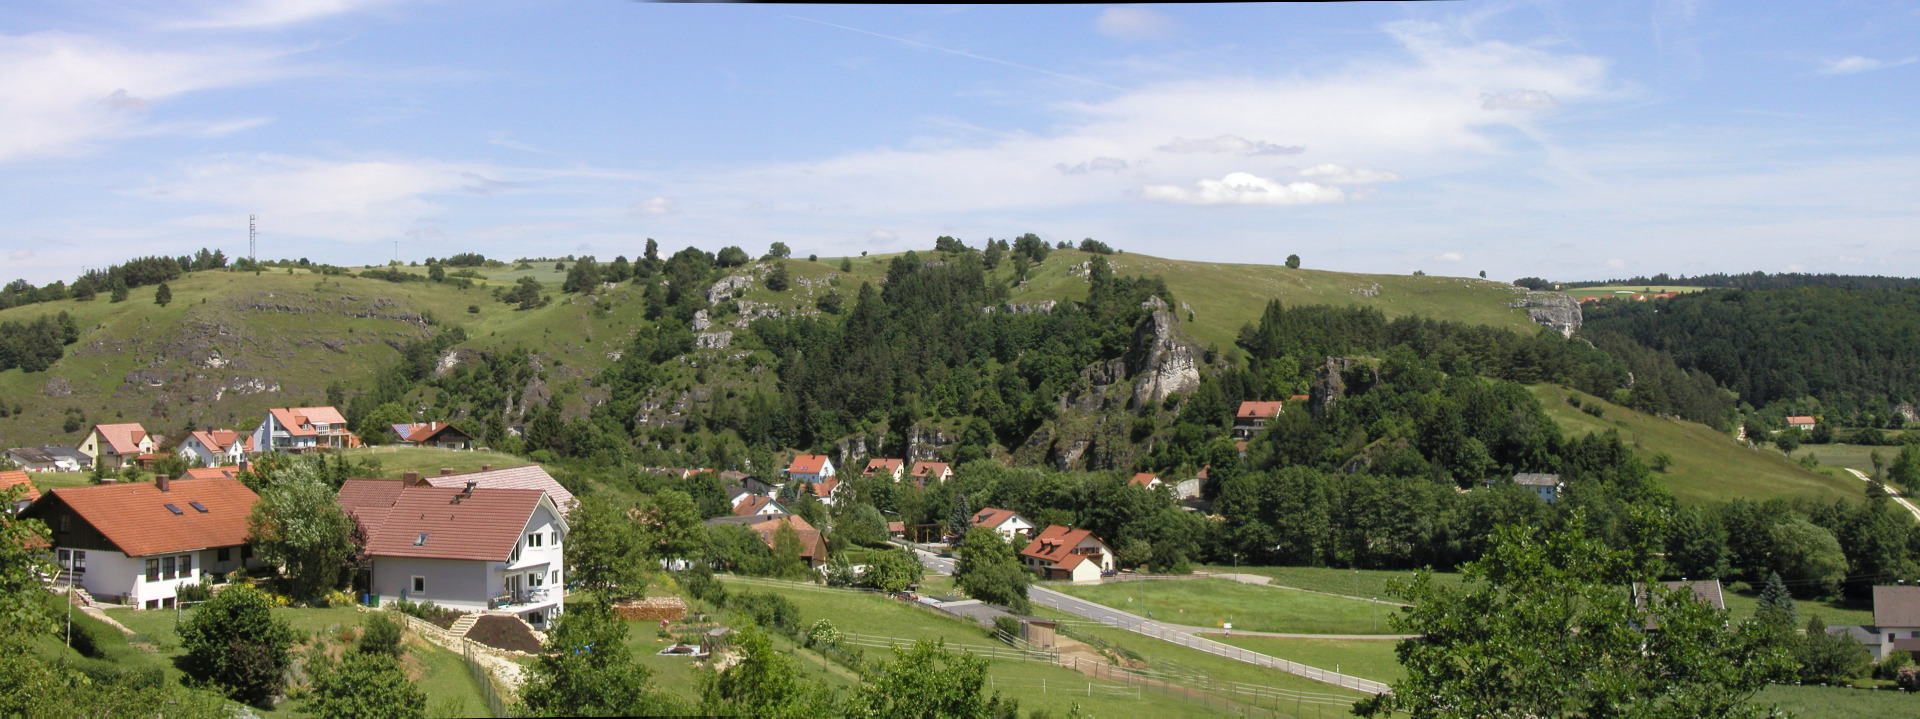 Panorama Sch_nhofen.jpg